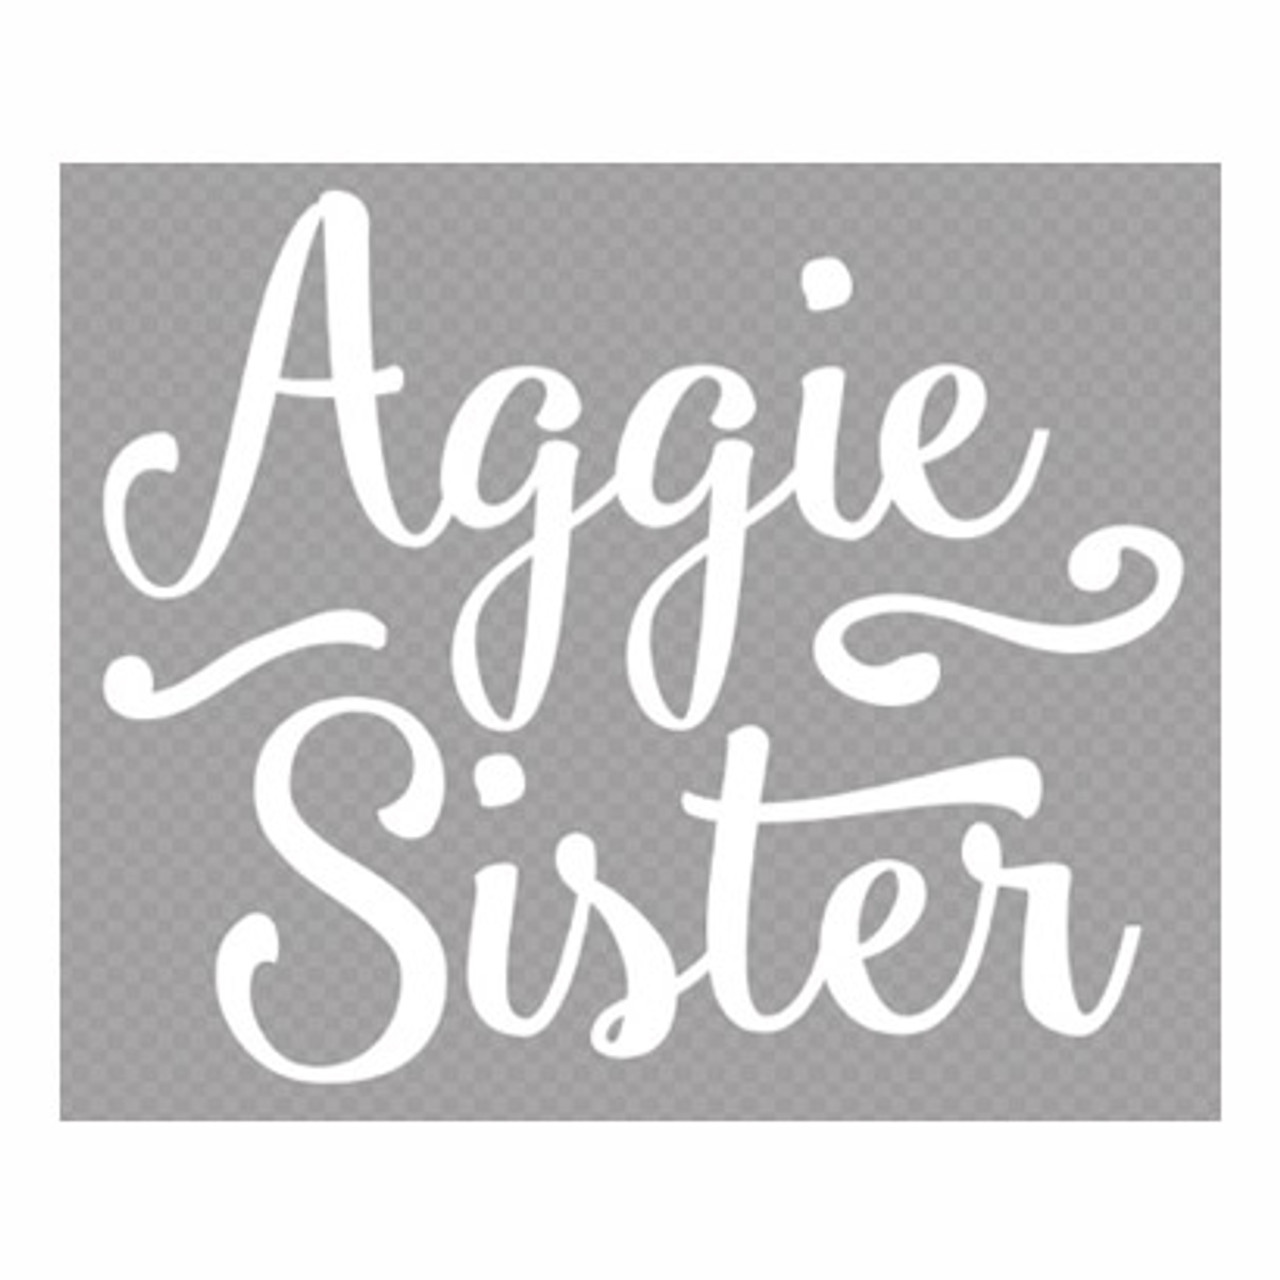 Gig'em SVG - Gig em Aggies svg - Aggie SVG - Aggies SVG - Texas